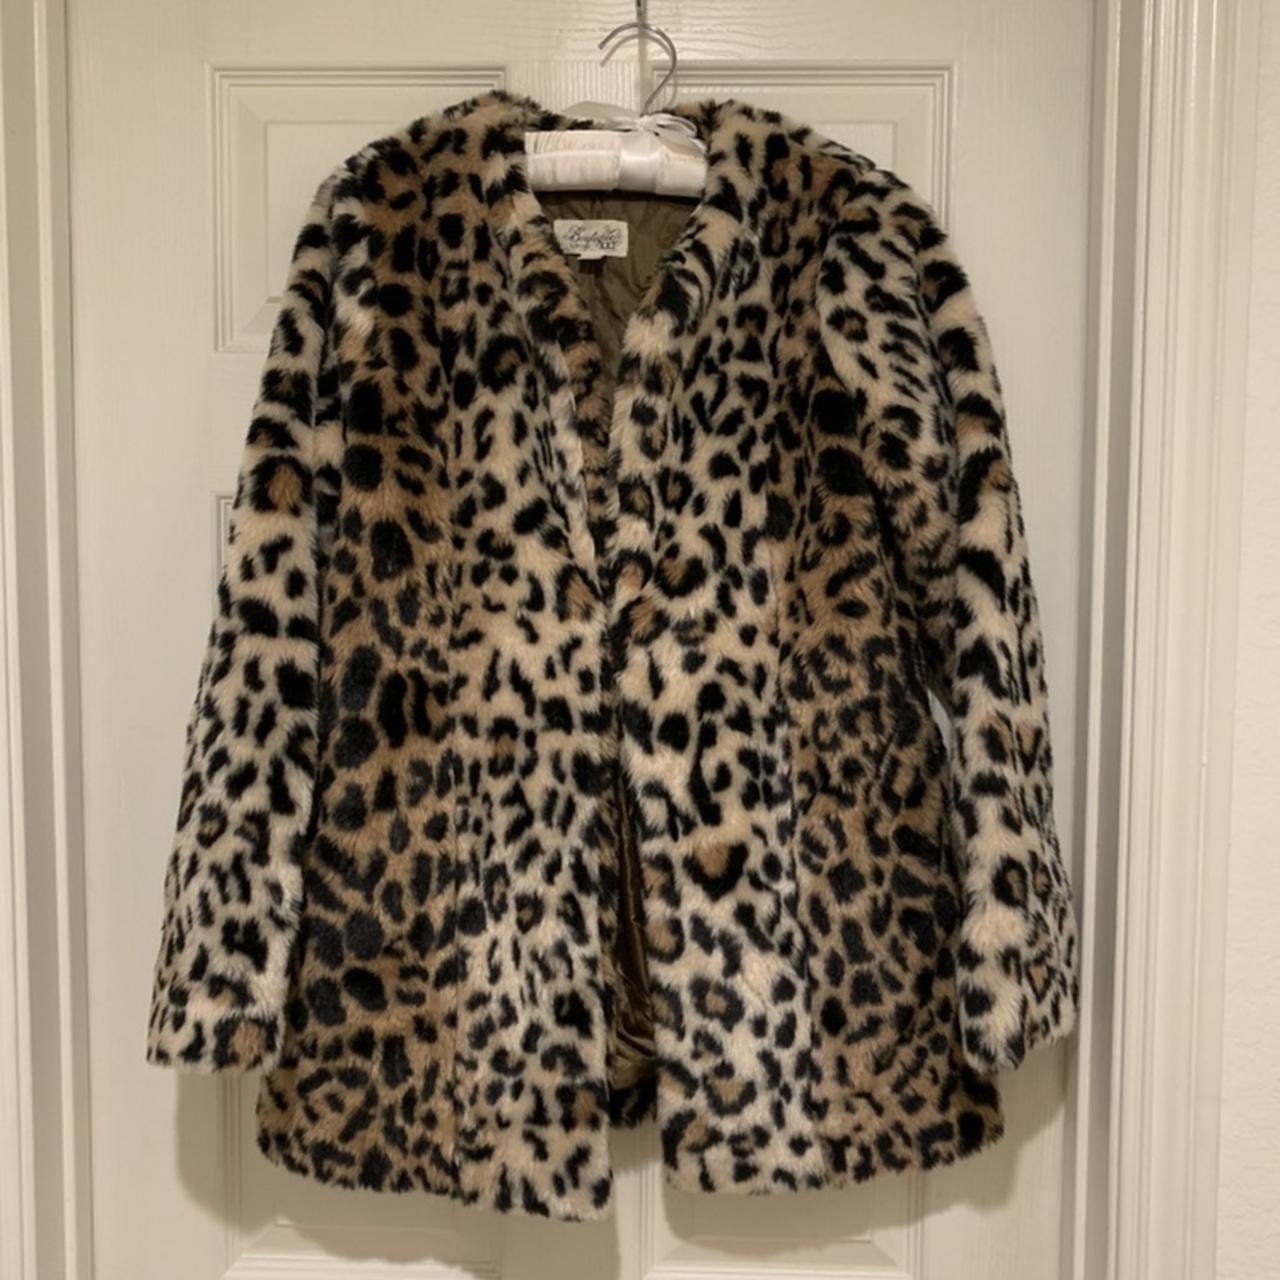 Leopard print faux fur jacket. A cold weather... - Depop